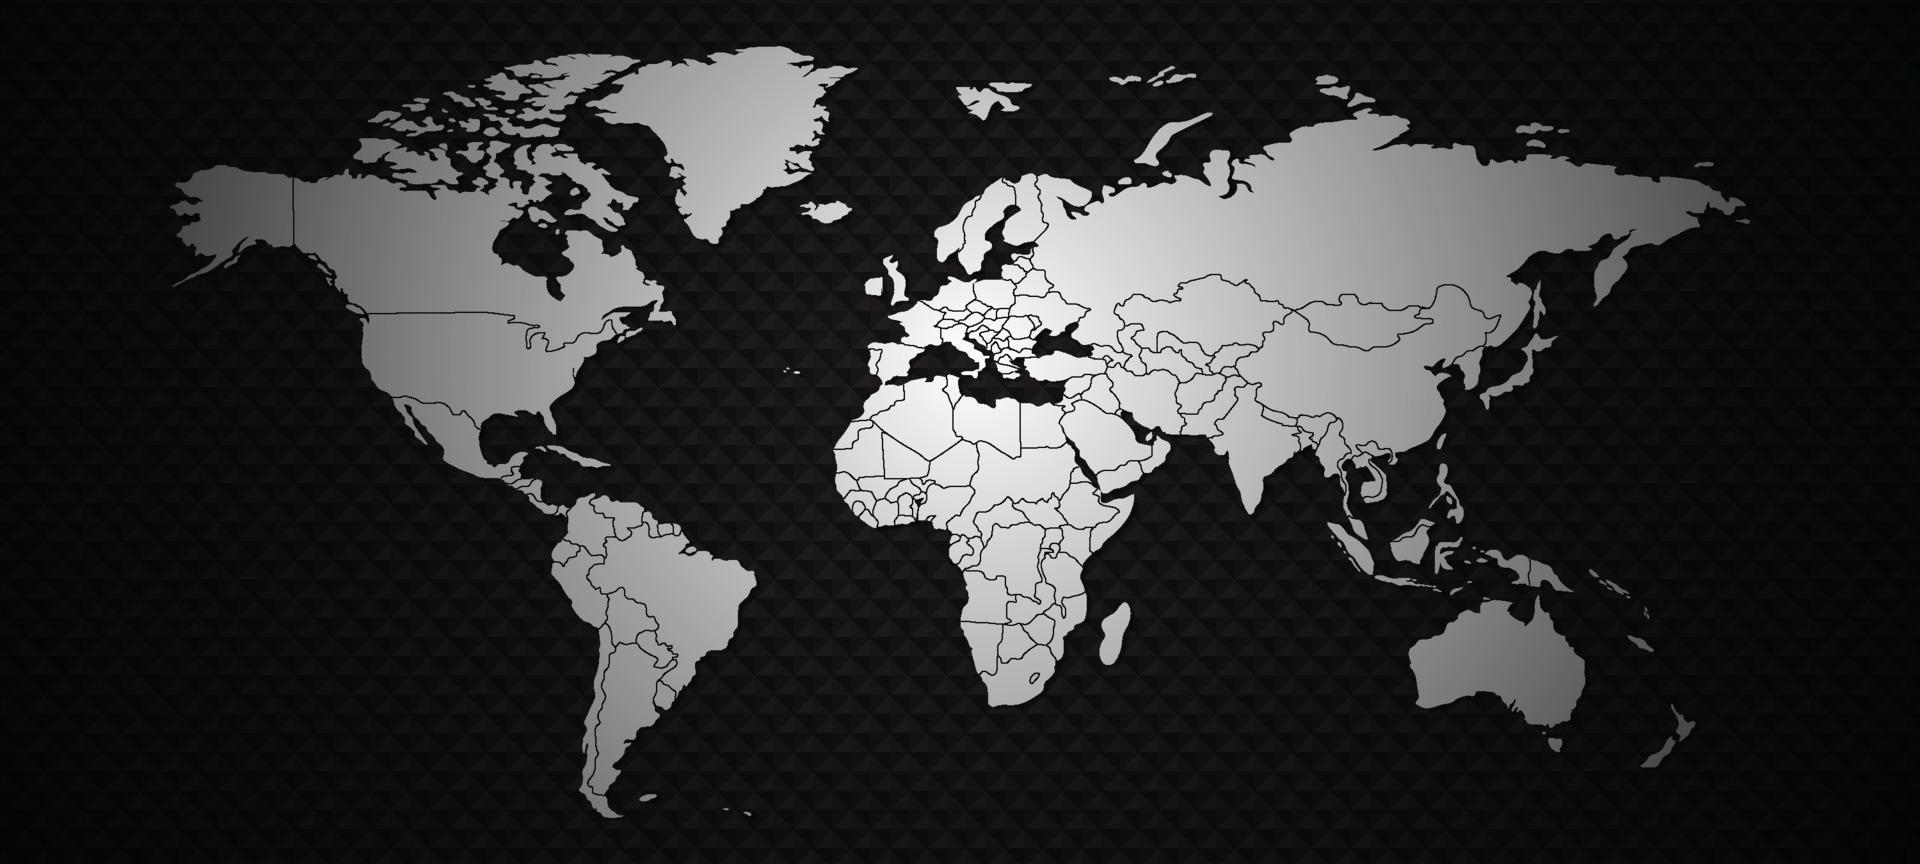 mapa del mundo en blanco y negro vector